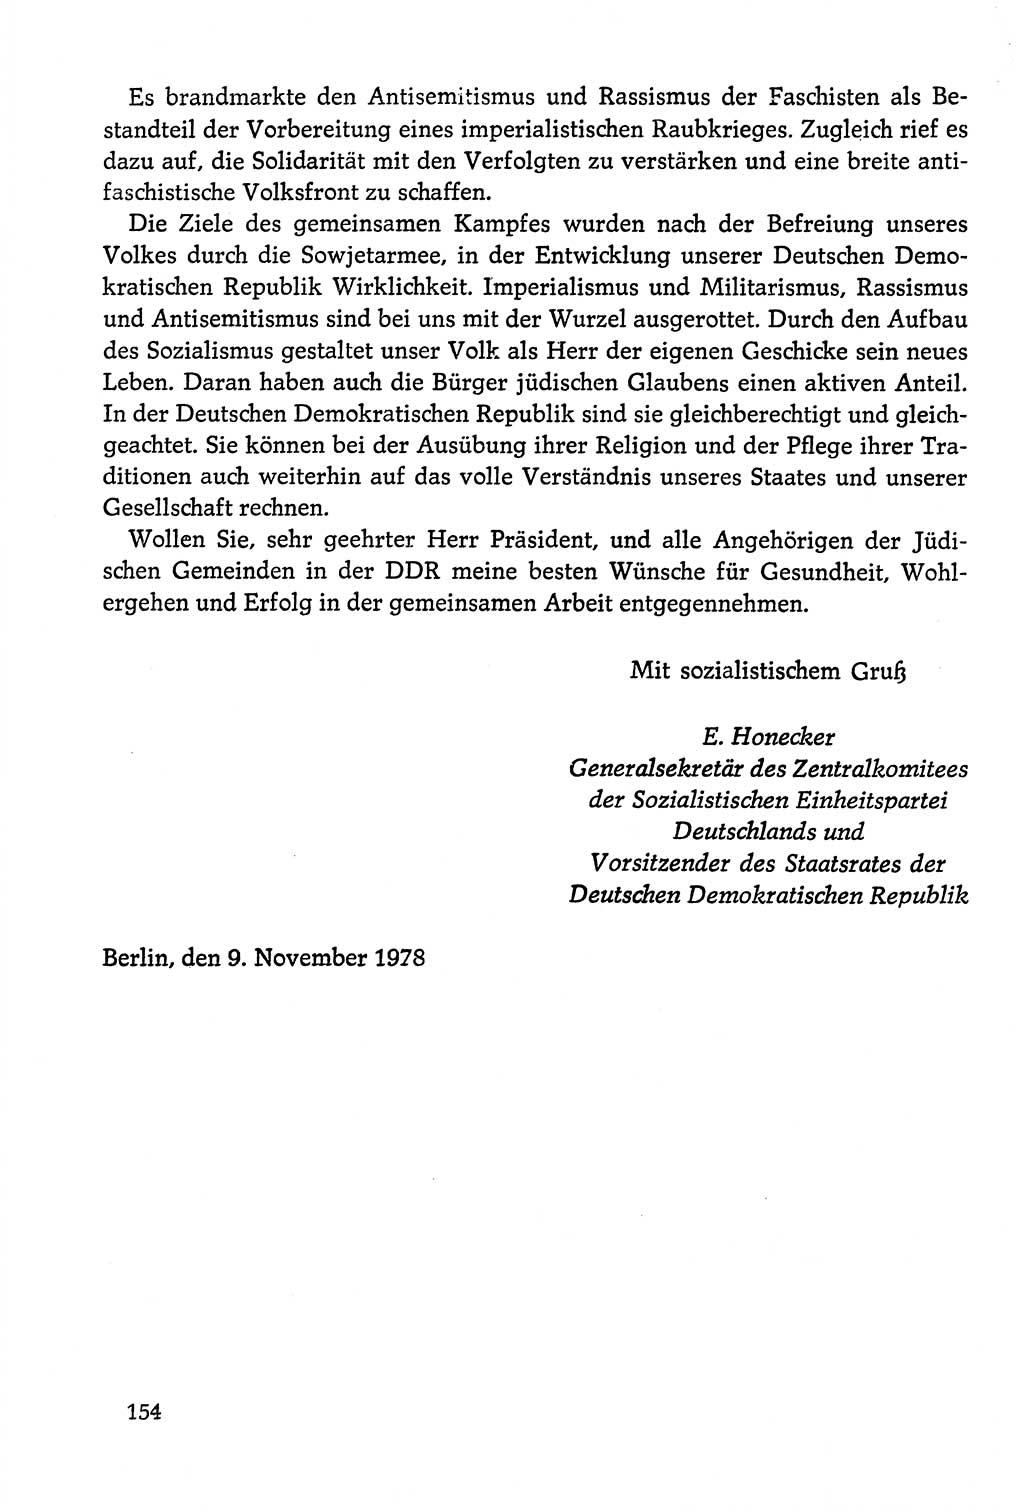 Dokumente der Sozialistischen Einheitspartei Deutschlands (SED) [Deutsche Demokratische Republik (DDR)] 1978-1979, Seite 154 (Dok. SED DDR 1978-1979, S. 154)